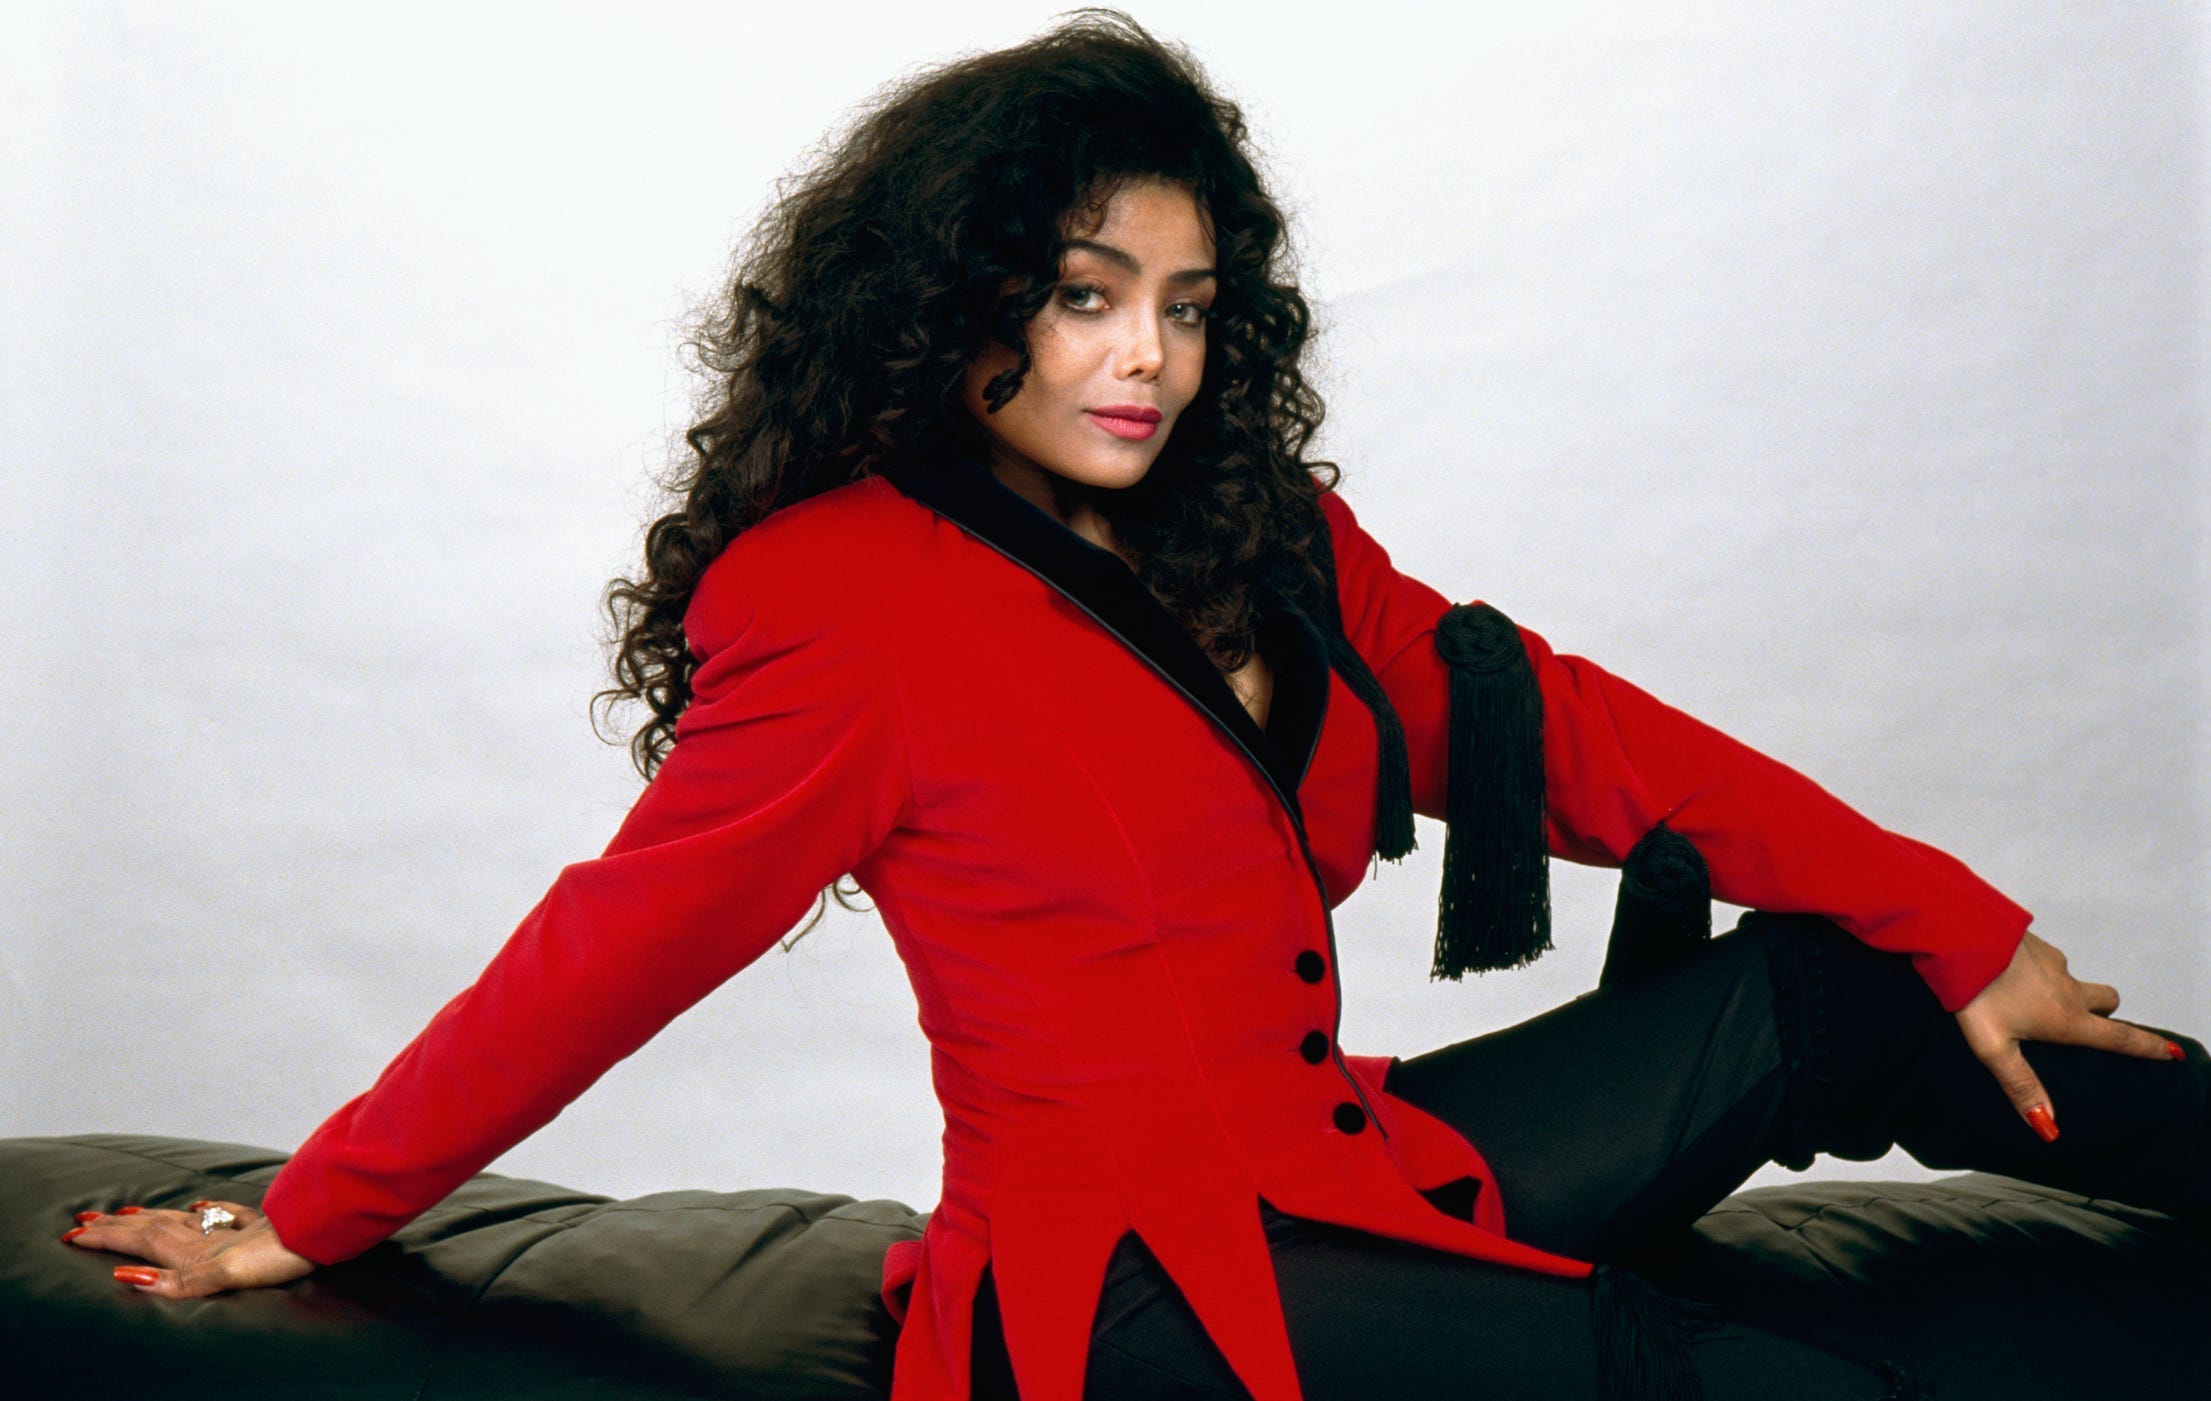 La Toyla Jackson auf einer Couch in einem roten Mantel